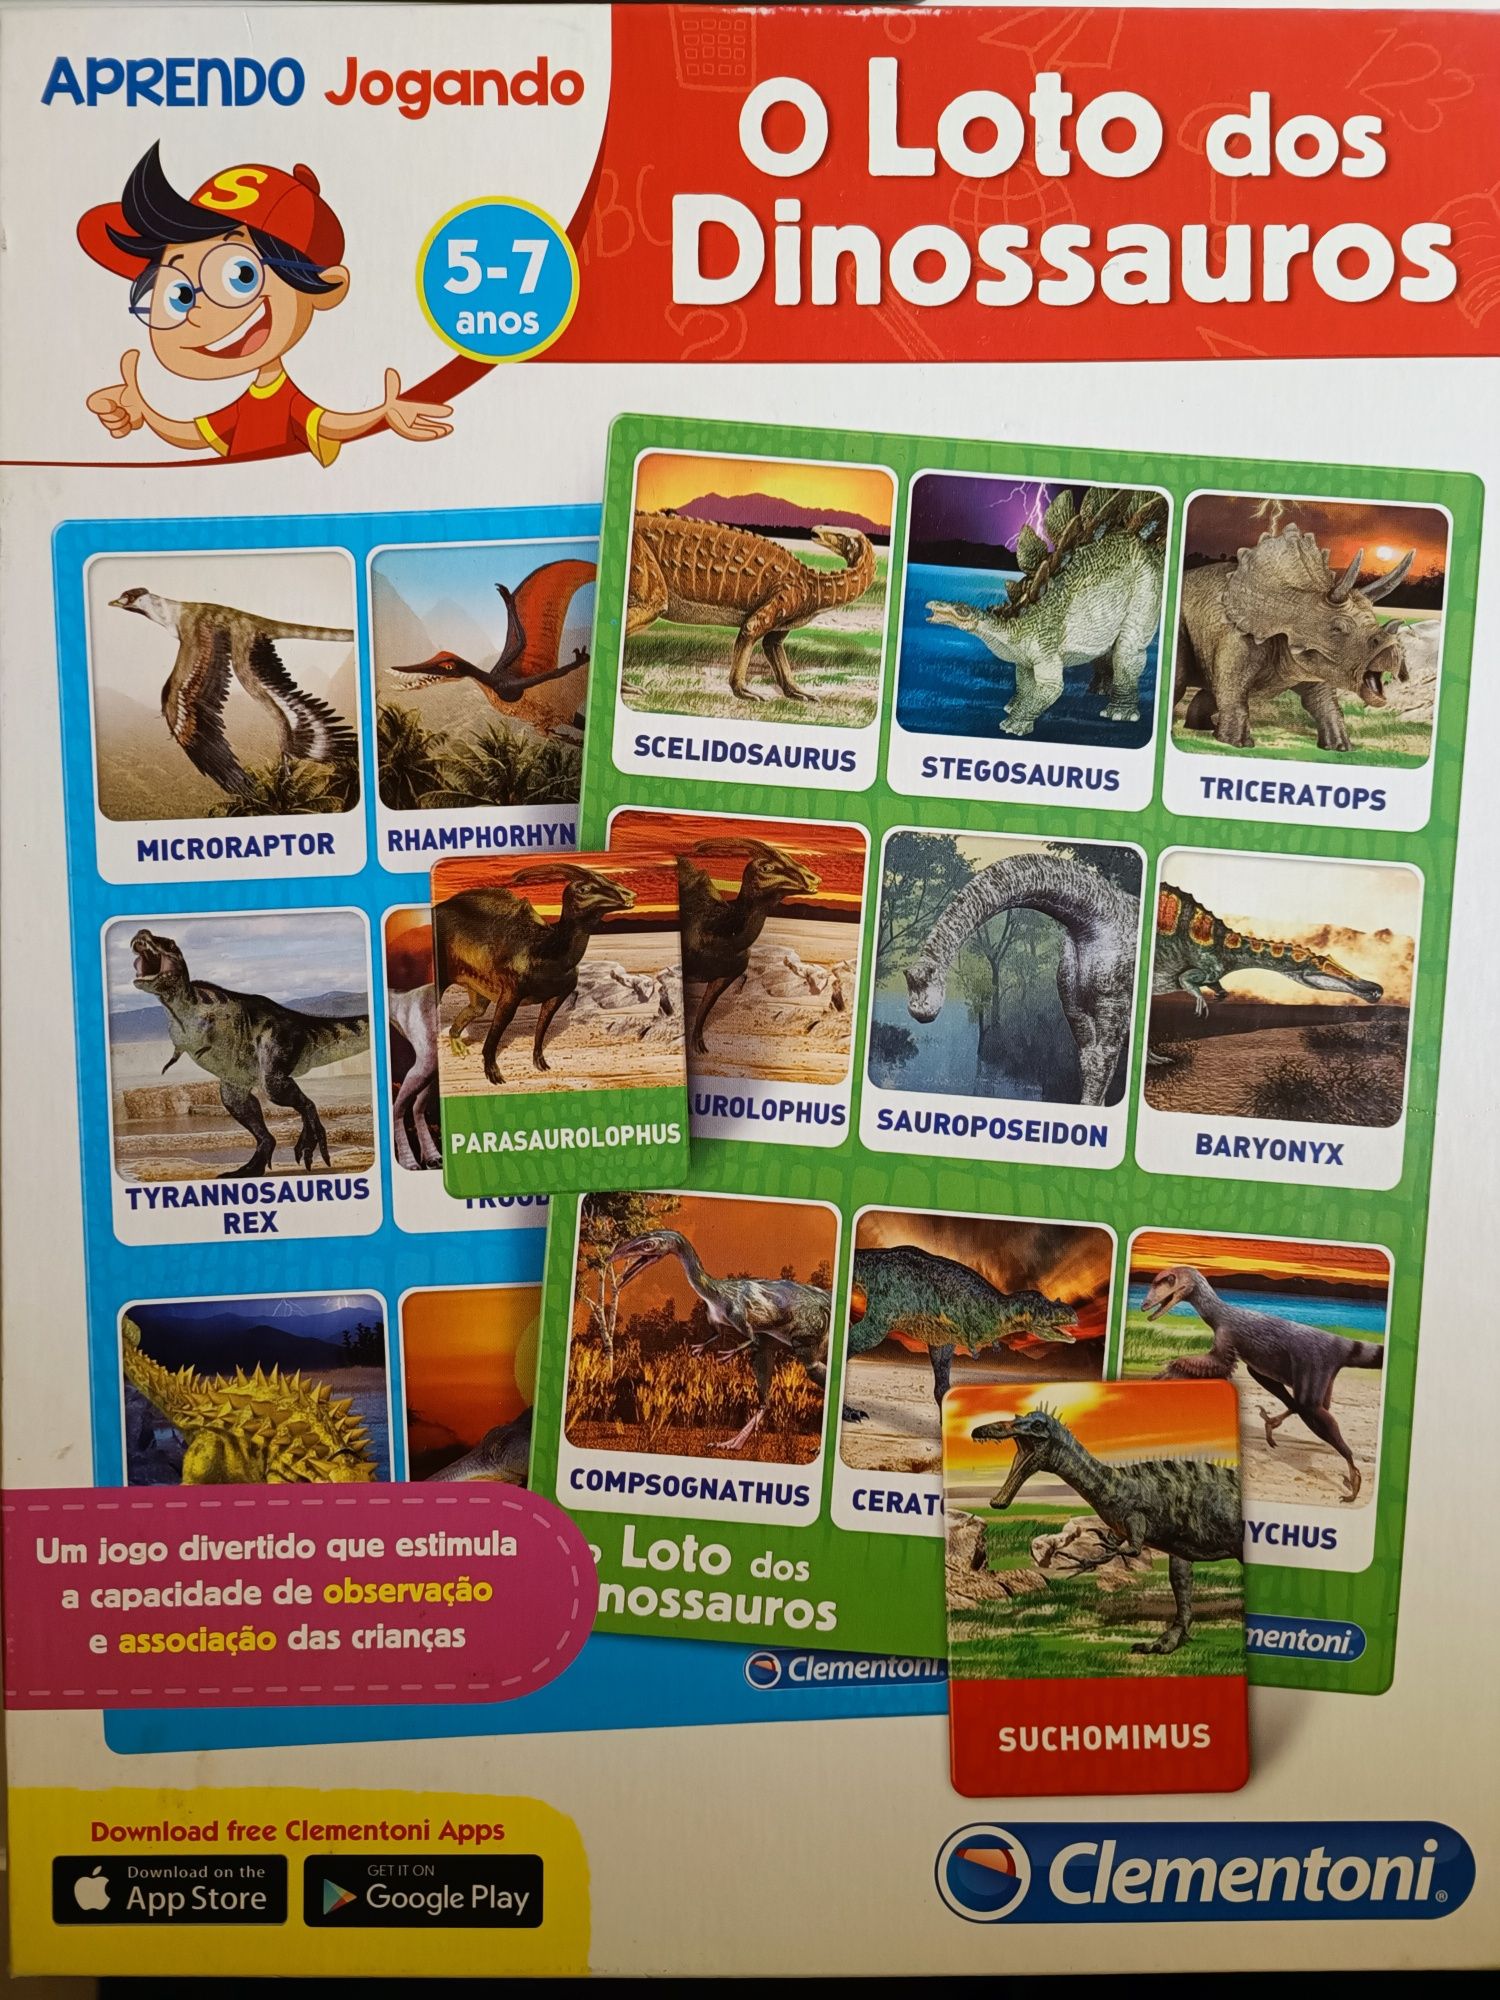 Loto dos dinossauros